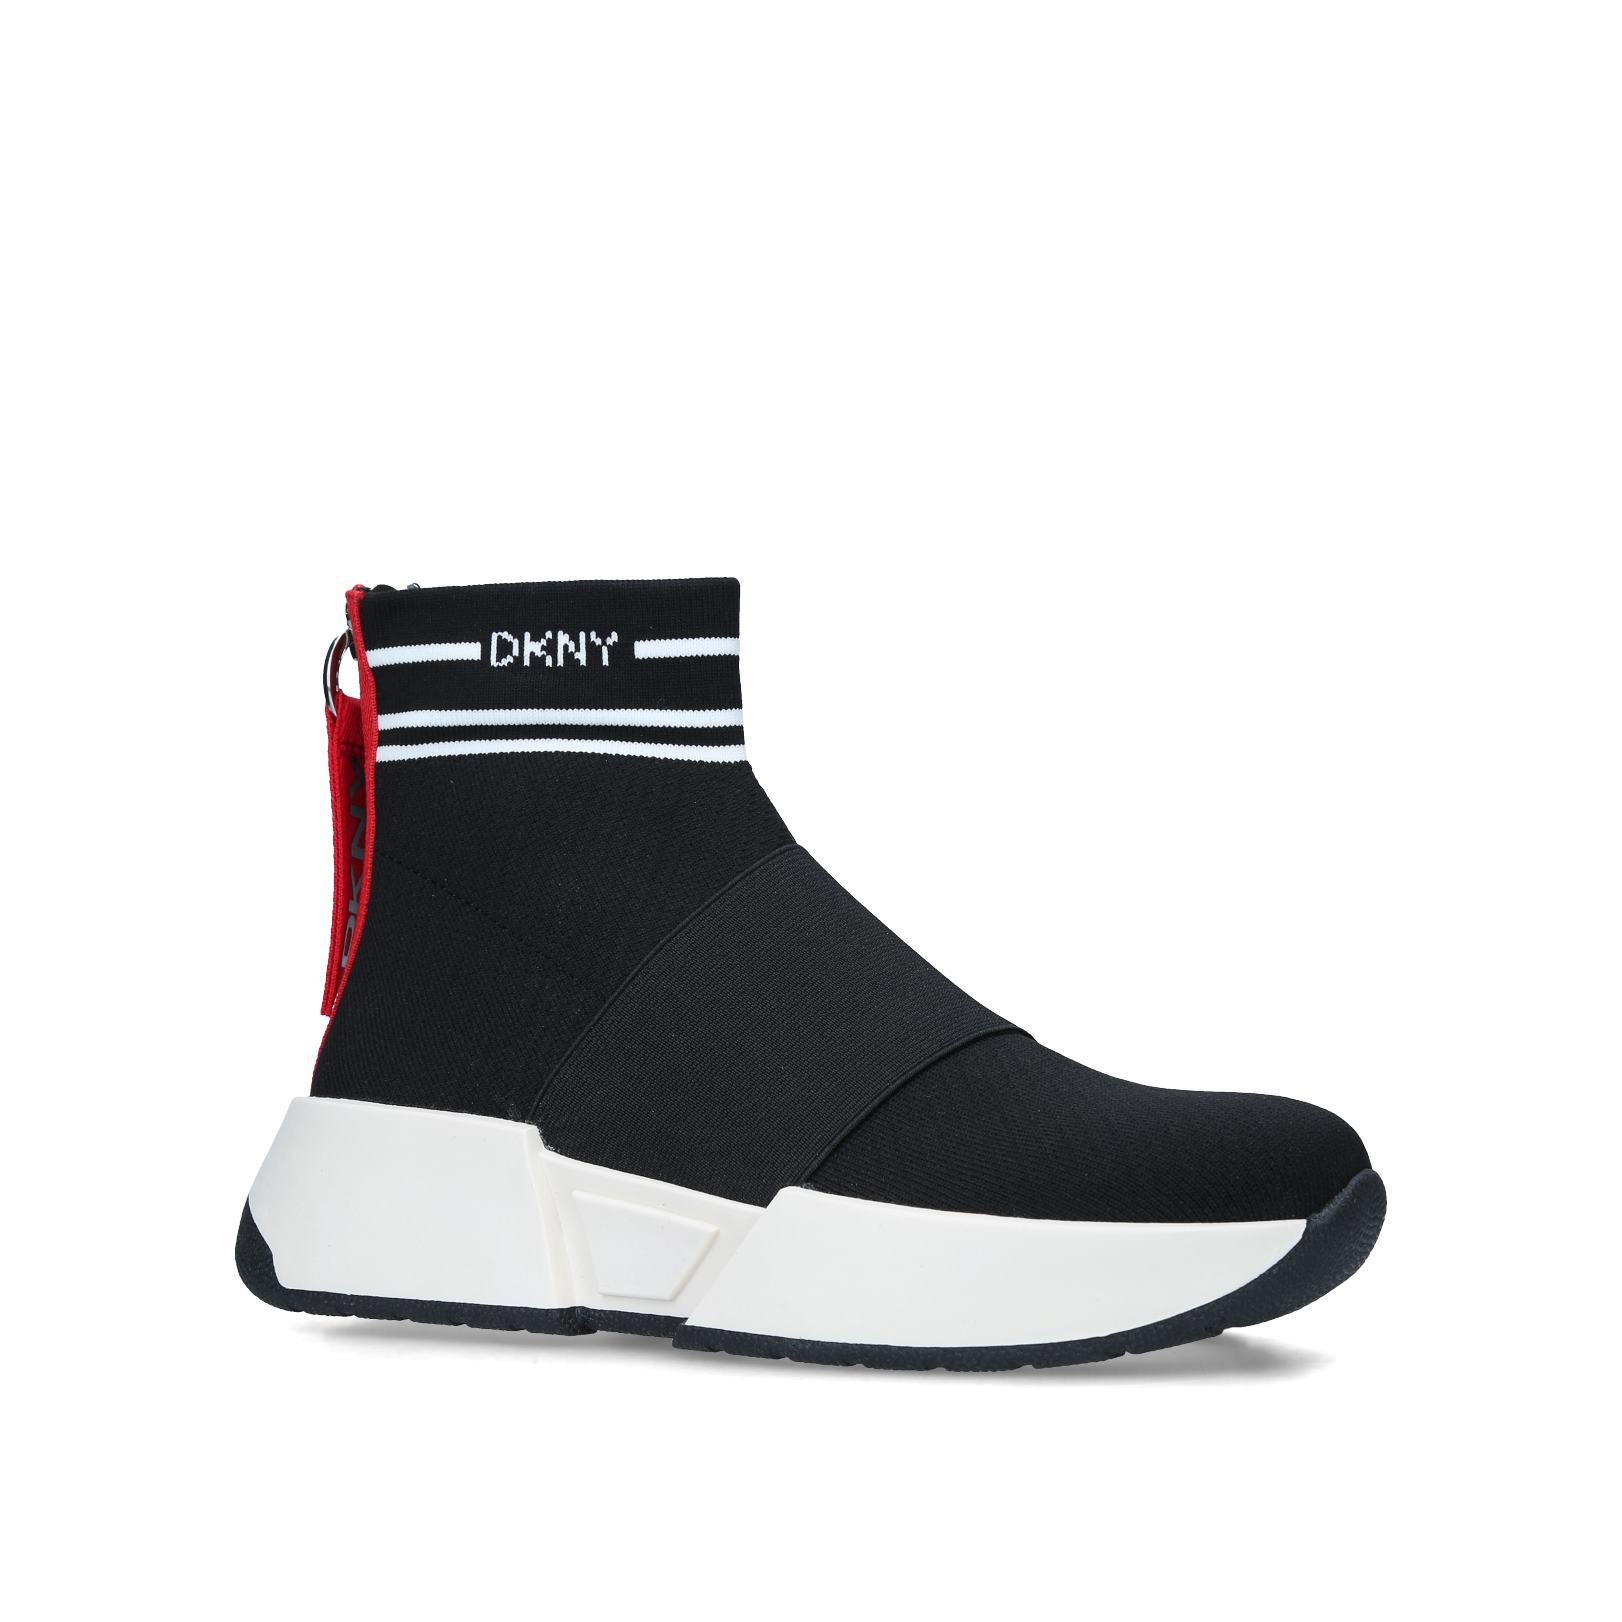 MARINI - DKNY Sneakers